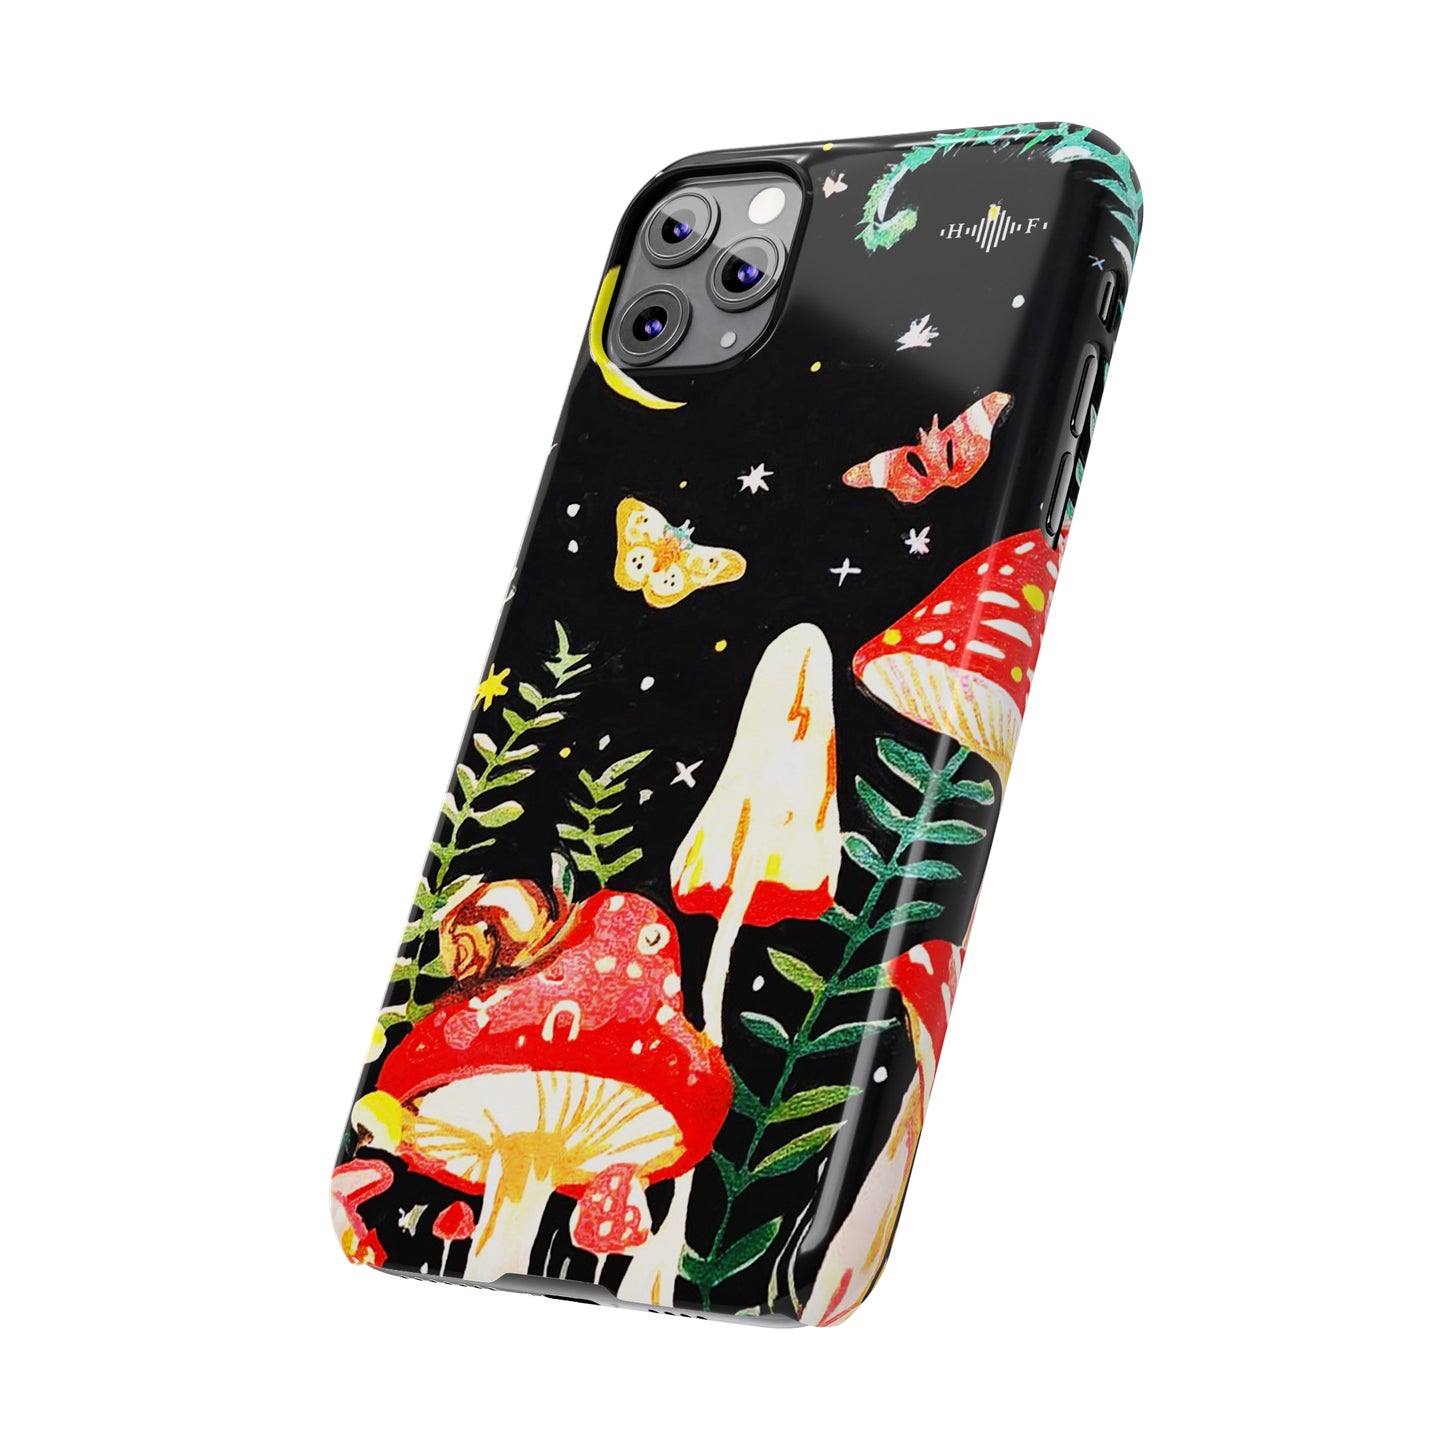 Mushroom Nights Slim Phone Cases